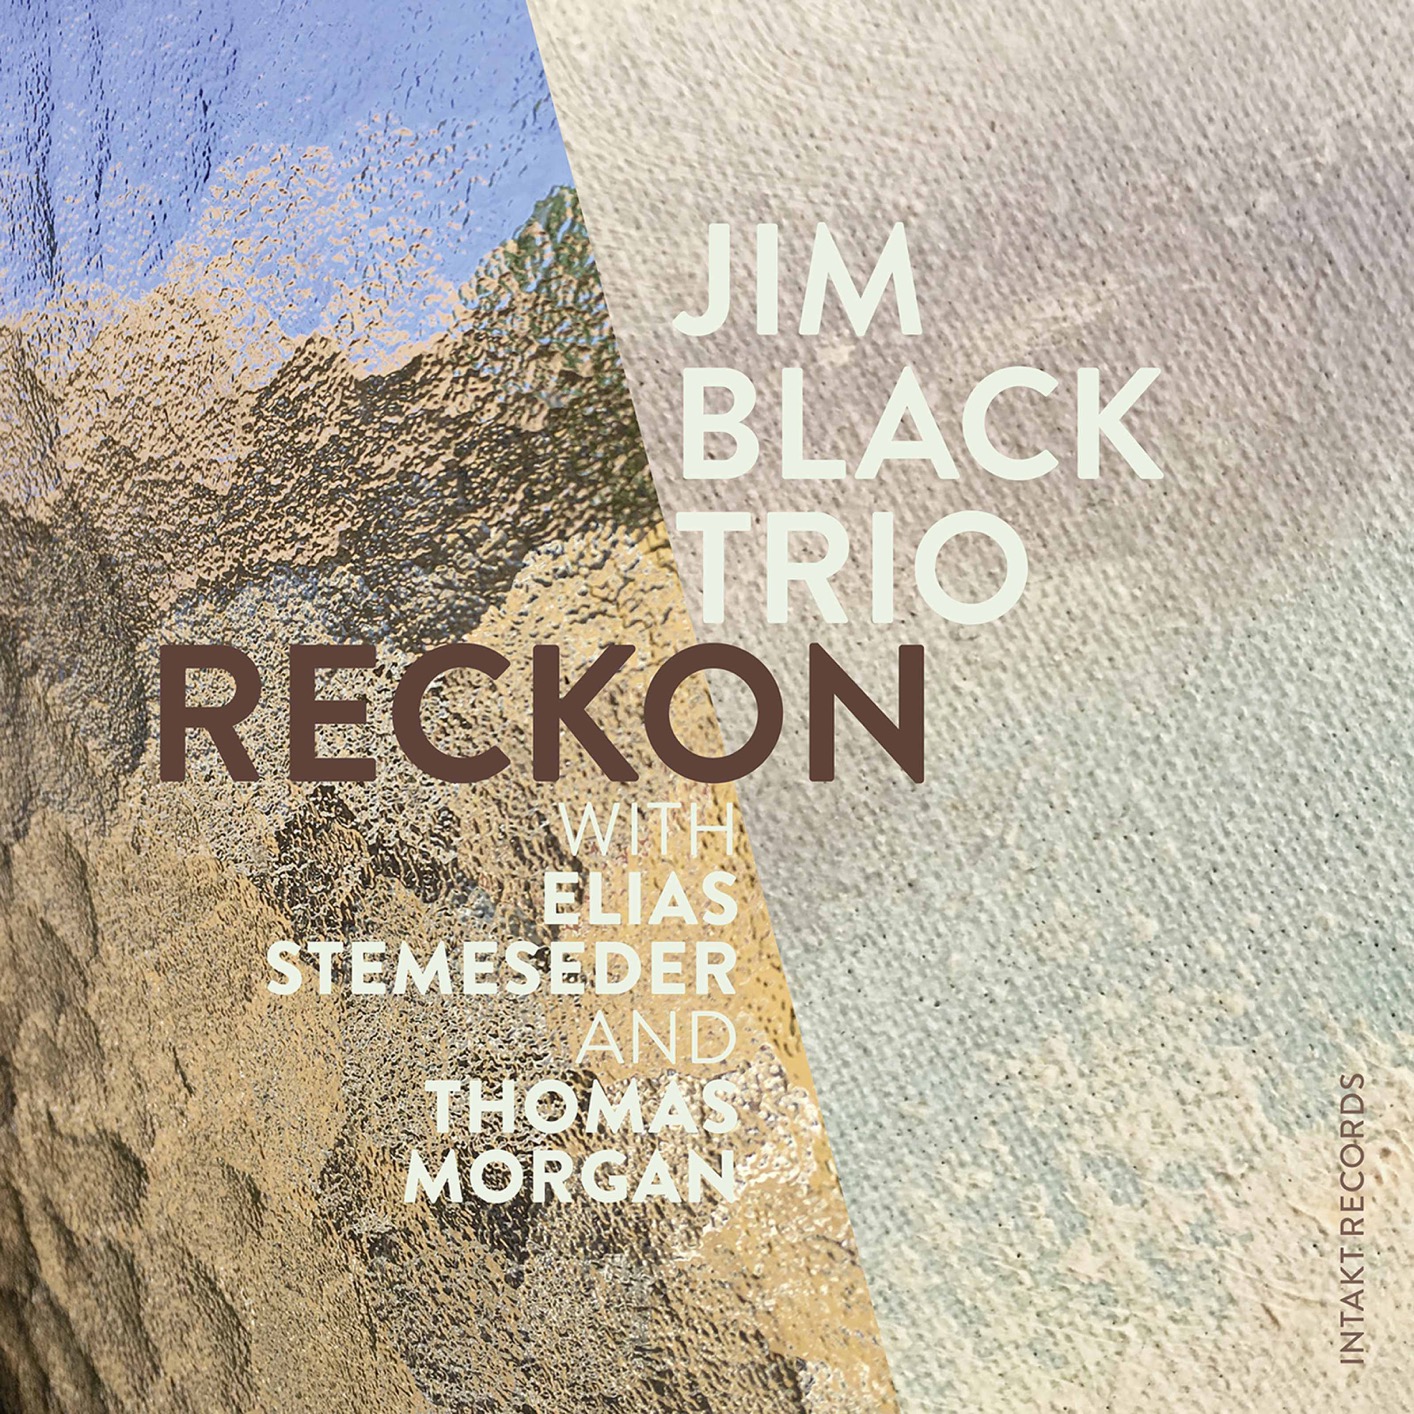 Jim Black Trio with Jim Black, Elias Stemeseder, Thomas Morgan – Reckon (2020) [FLAC 24bit/88,2kHz]